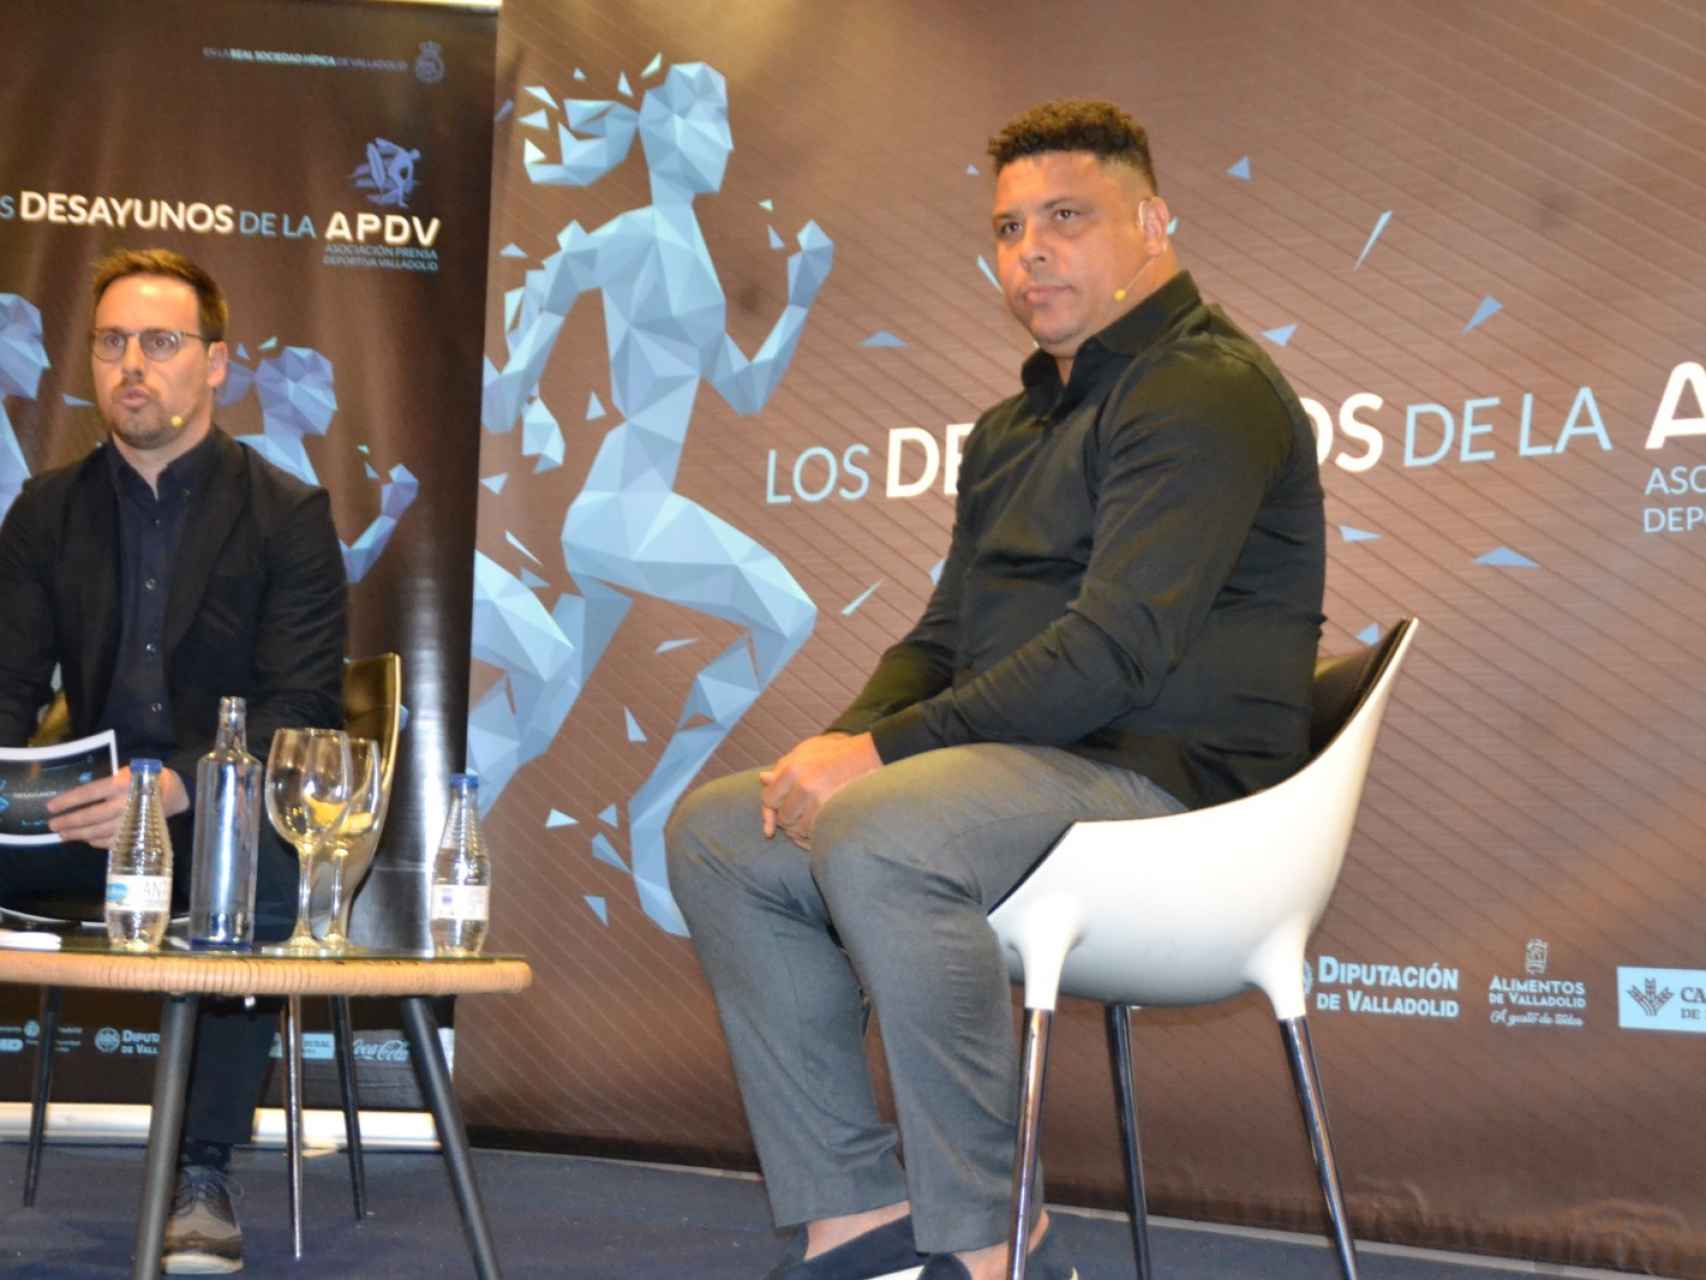 Ronaldo Nazario con Chus Rodríguez en los desayunos de la APDV.